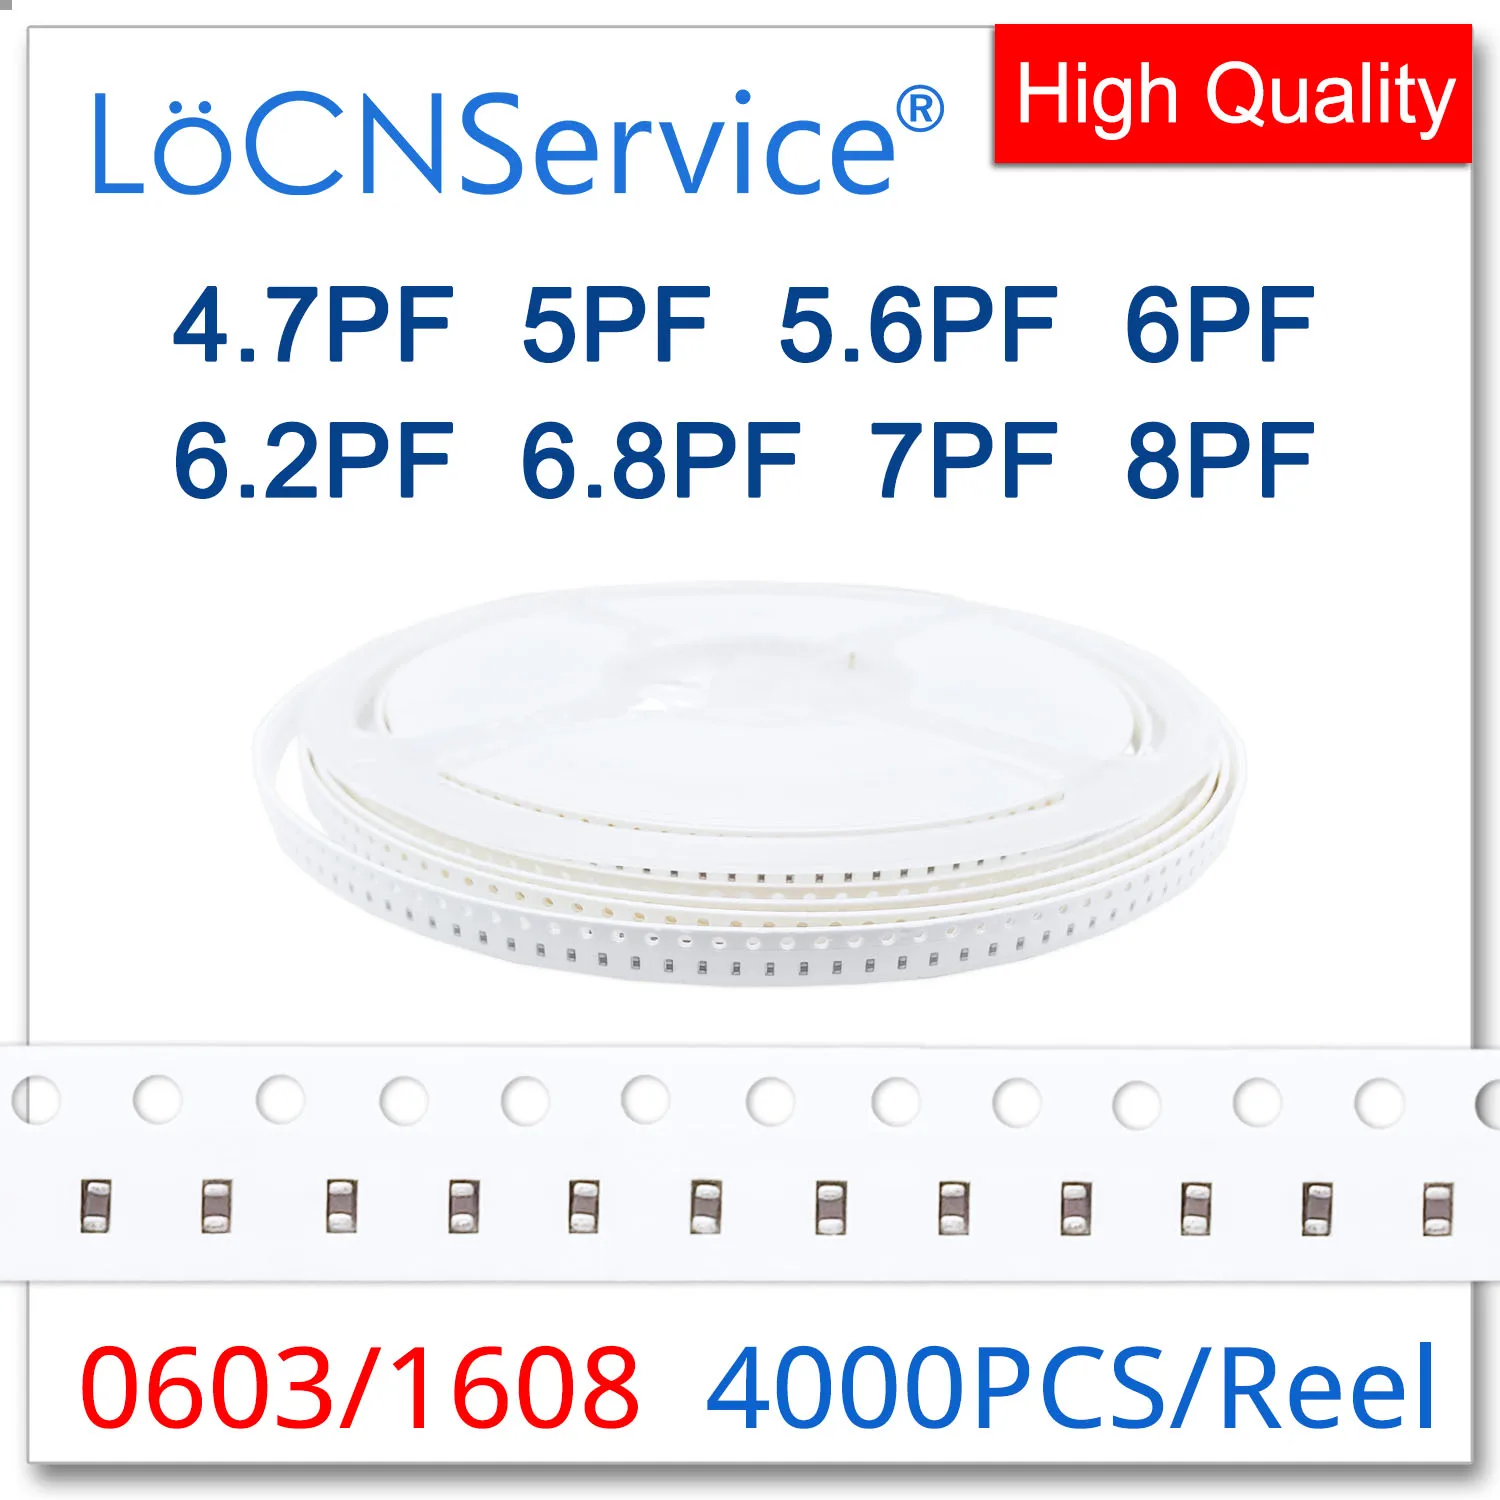 LoCNService Capacitors 4000PCS 0603 1608 COG/NPO RoHS 50V 0.5% 5% 4.7PF 5PF 5.6PF 6PF 6.2PF 6.8PF 7PF 8PF SMD High quality